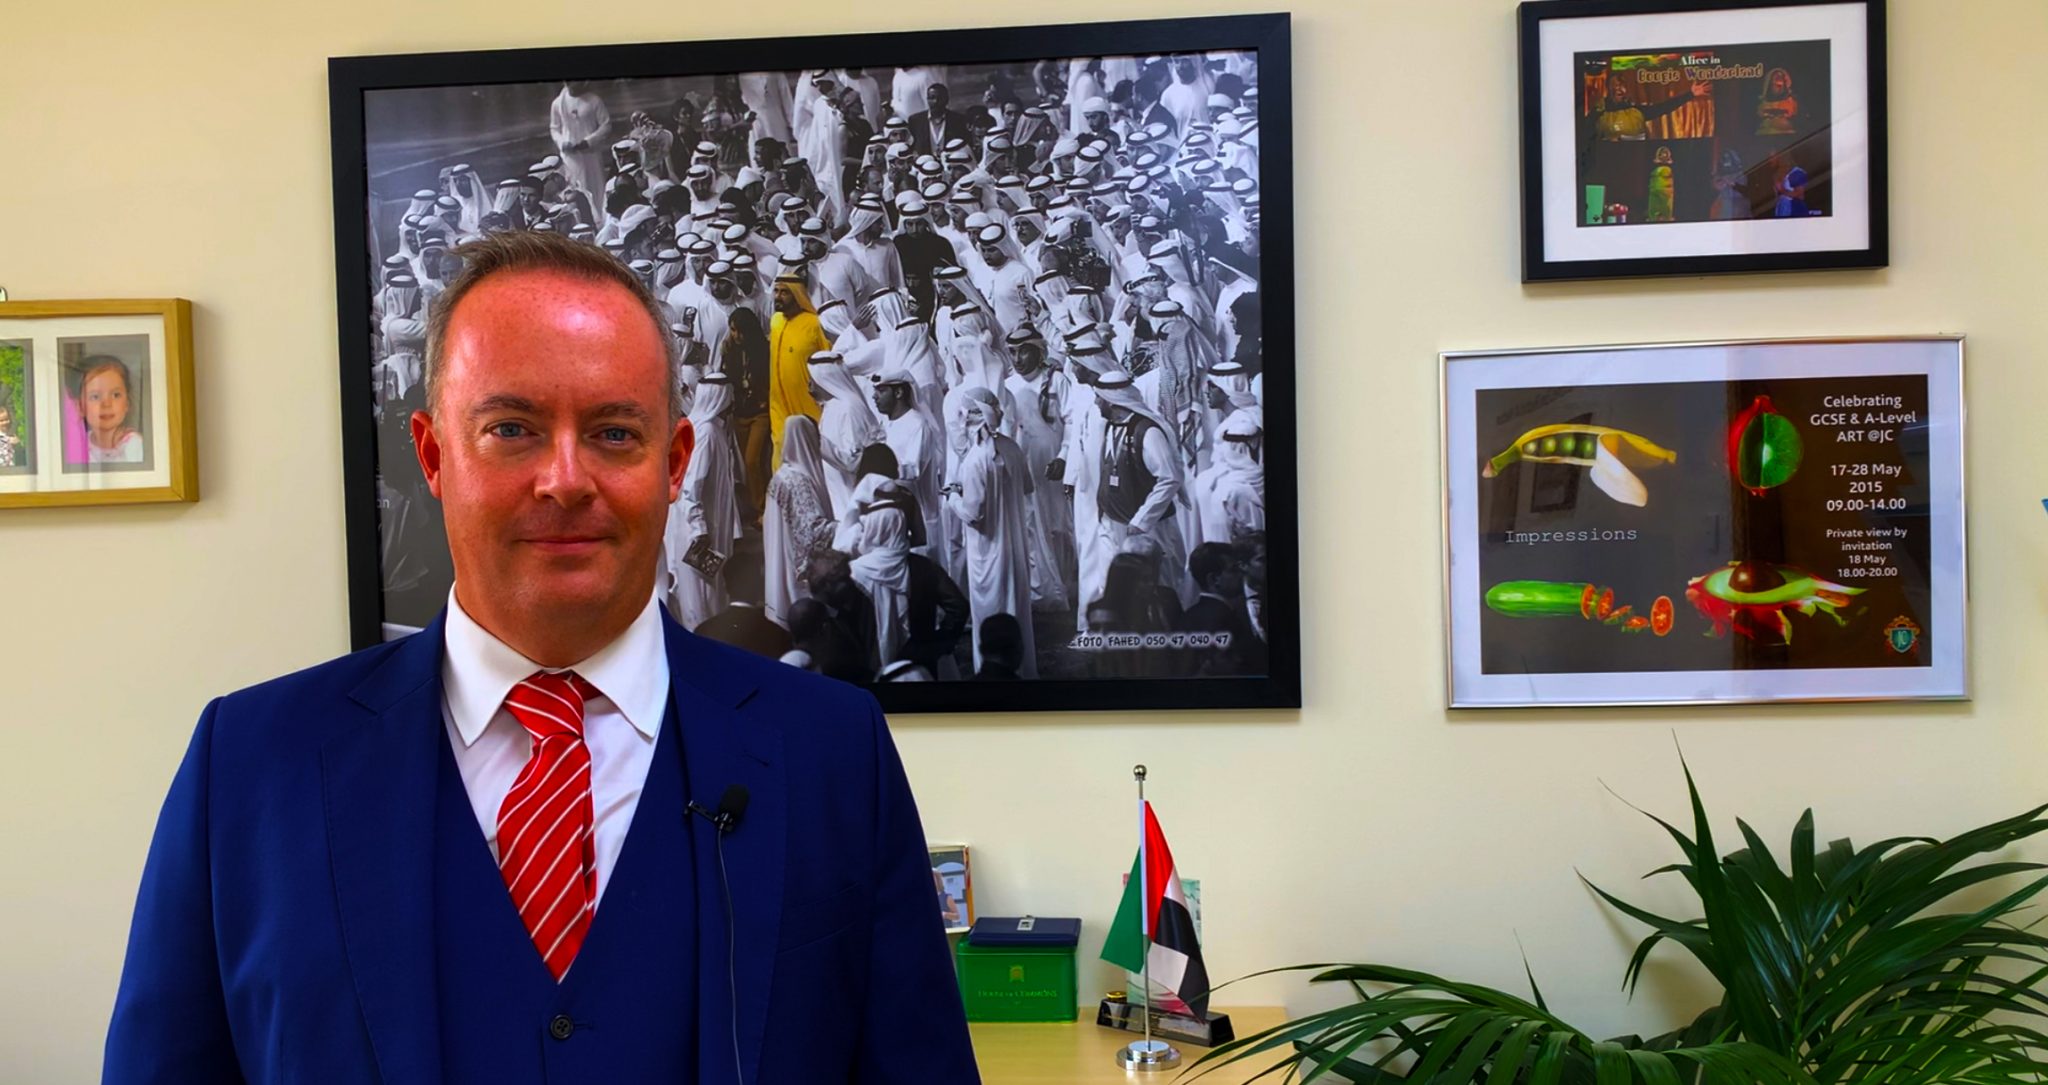 Foto von Simon O'Connor, neuer Direktor der Deira International School in Dubai, aufgenommen im August 2020 im exklusiven Gespräch mit SchoolsCompared.com